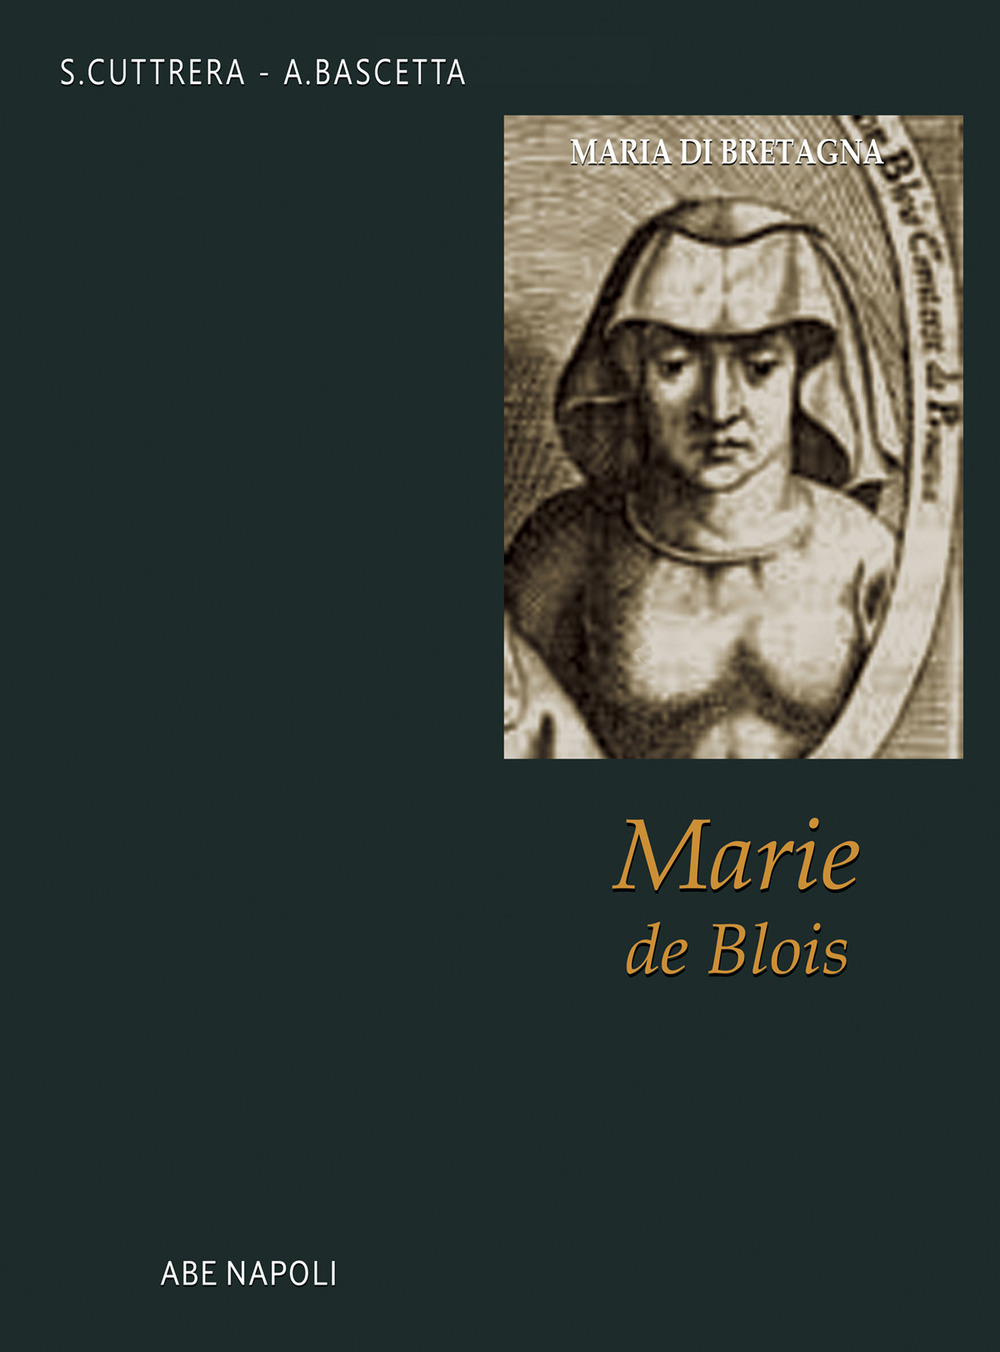 Maria di Bretagna, Marie de Blois